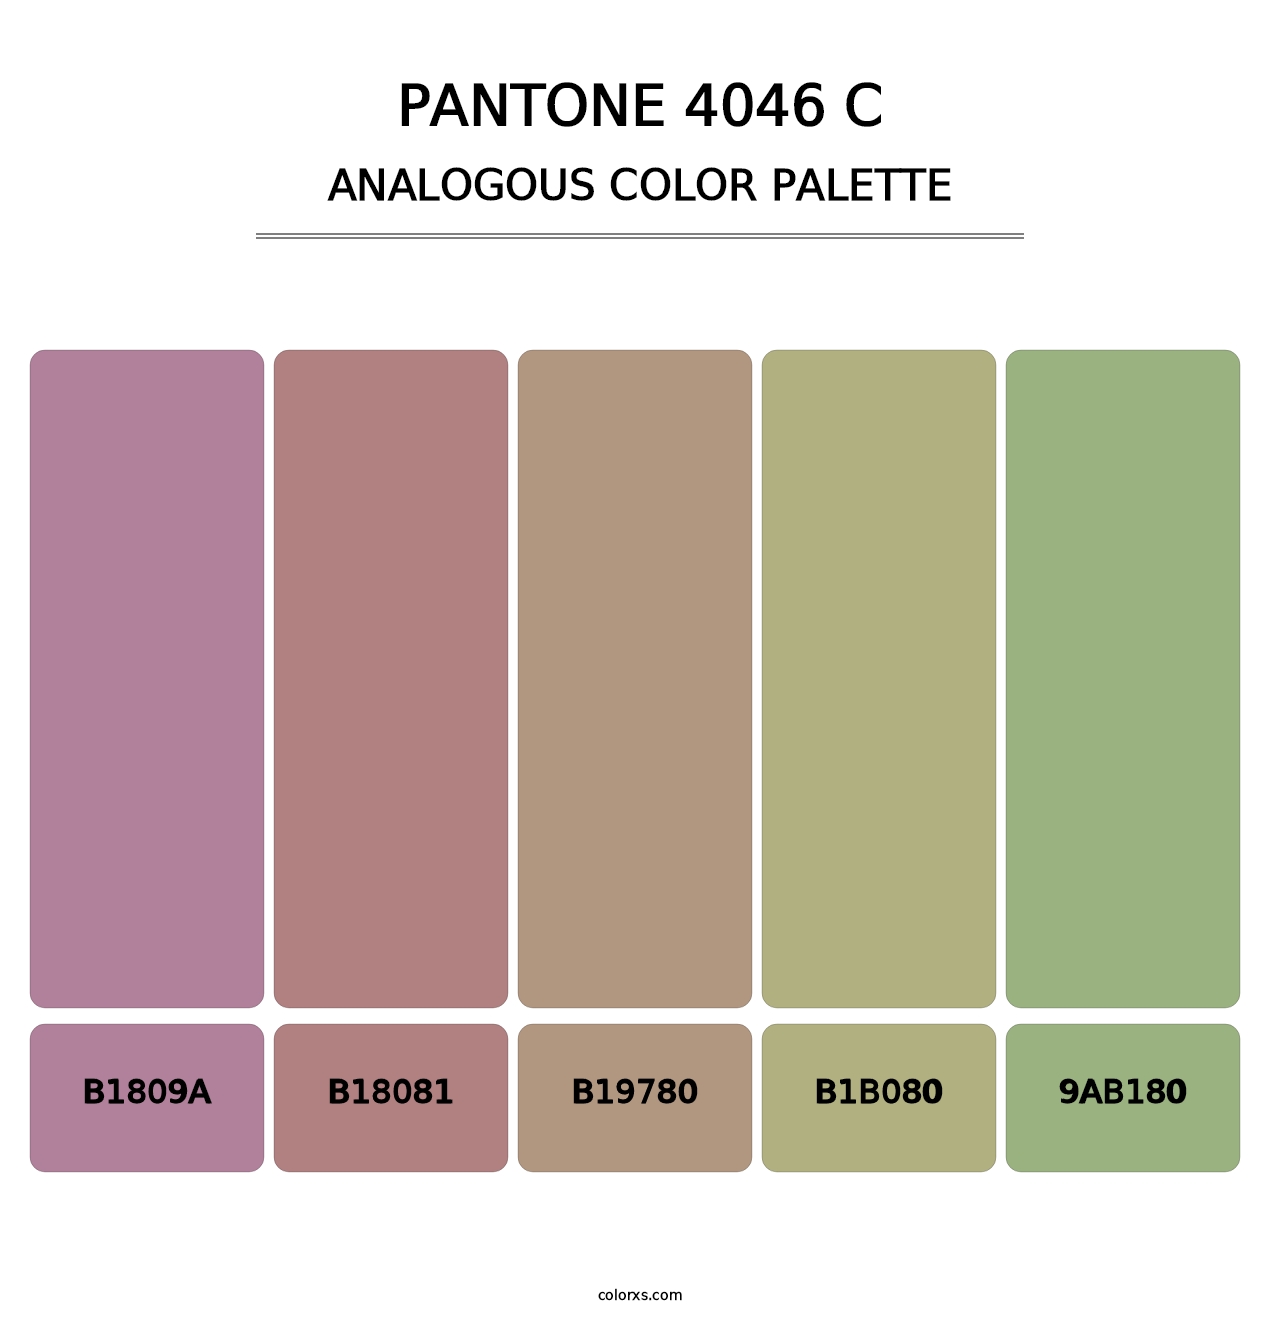 PANTONE 4046 C - Analogous Color Palette